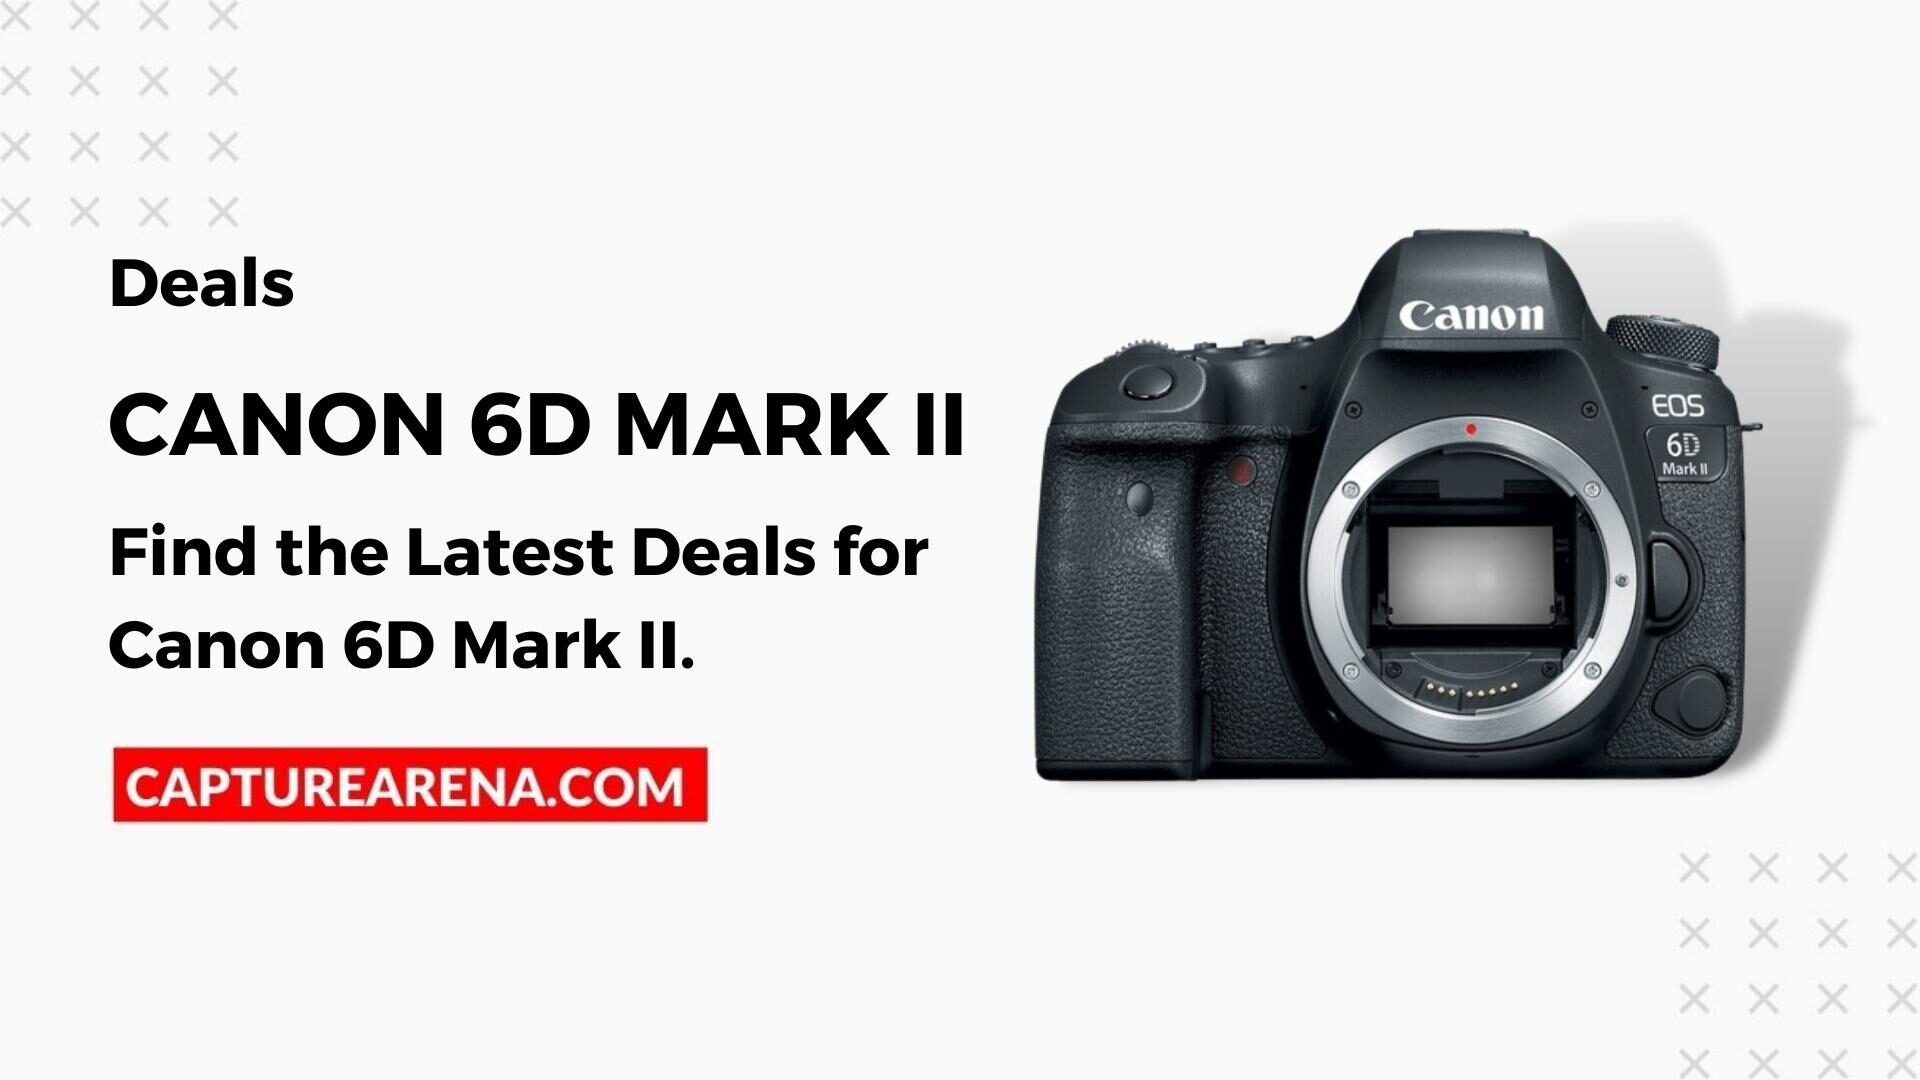 Canon 6D Mark II Deals